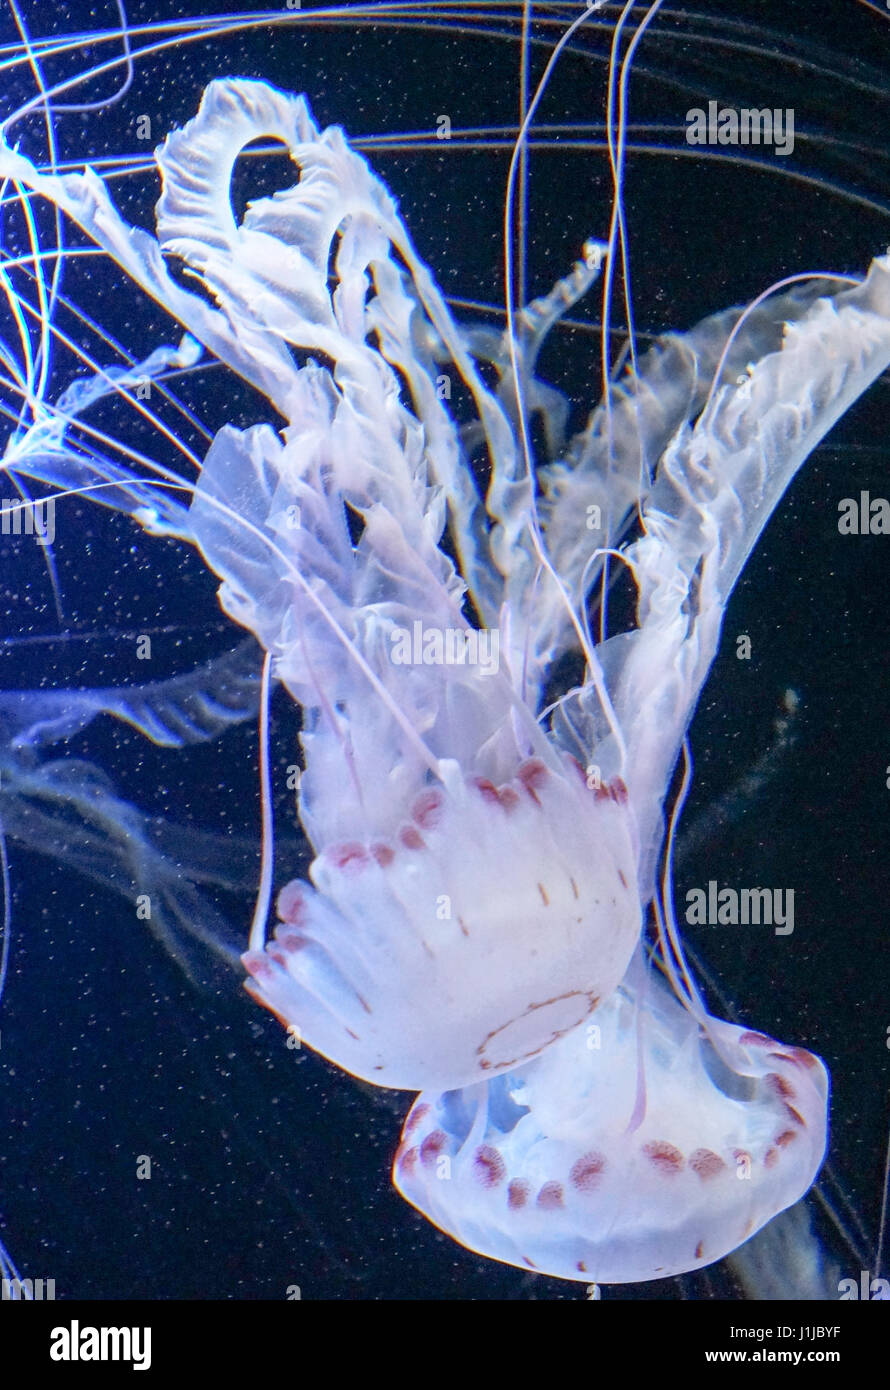 Illuminated jellyfish in the sea Stock Photo